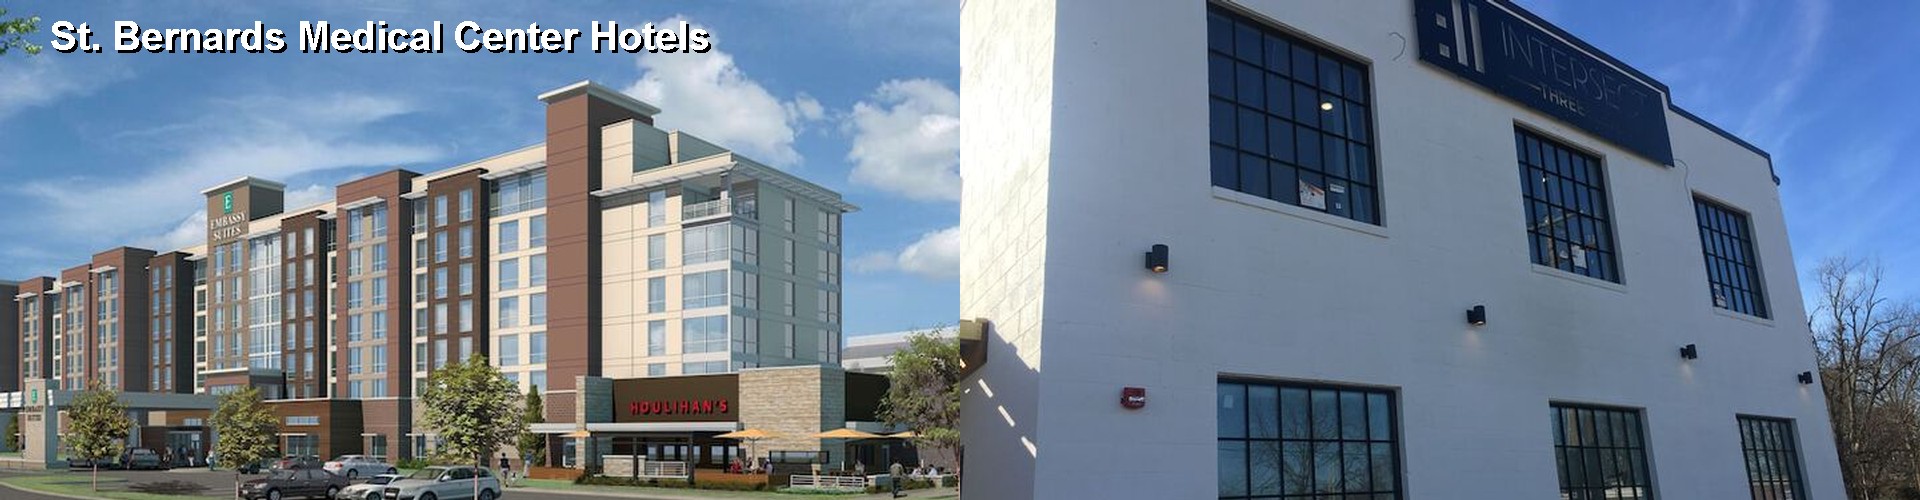 2 Best Hotels near St. Bernards Medical Center